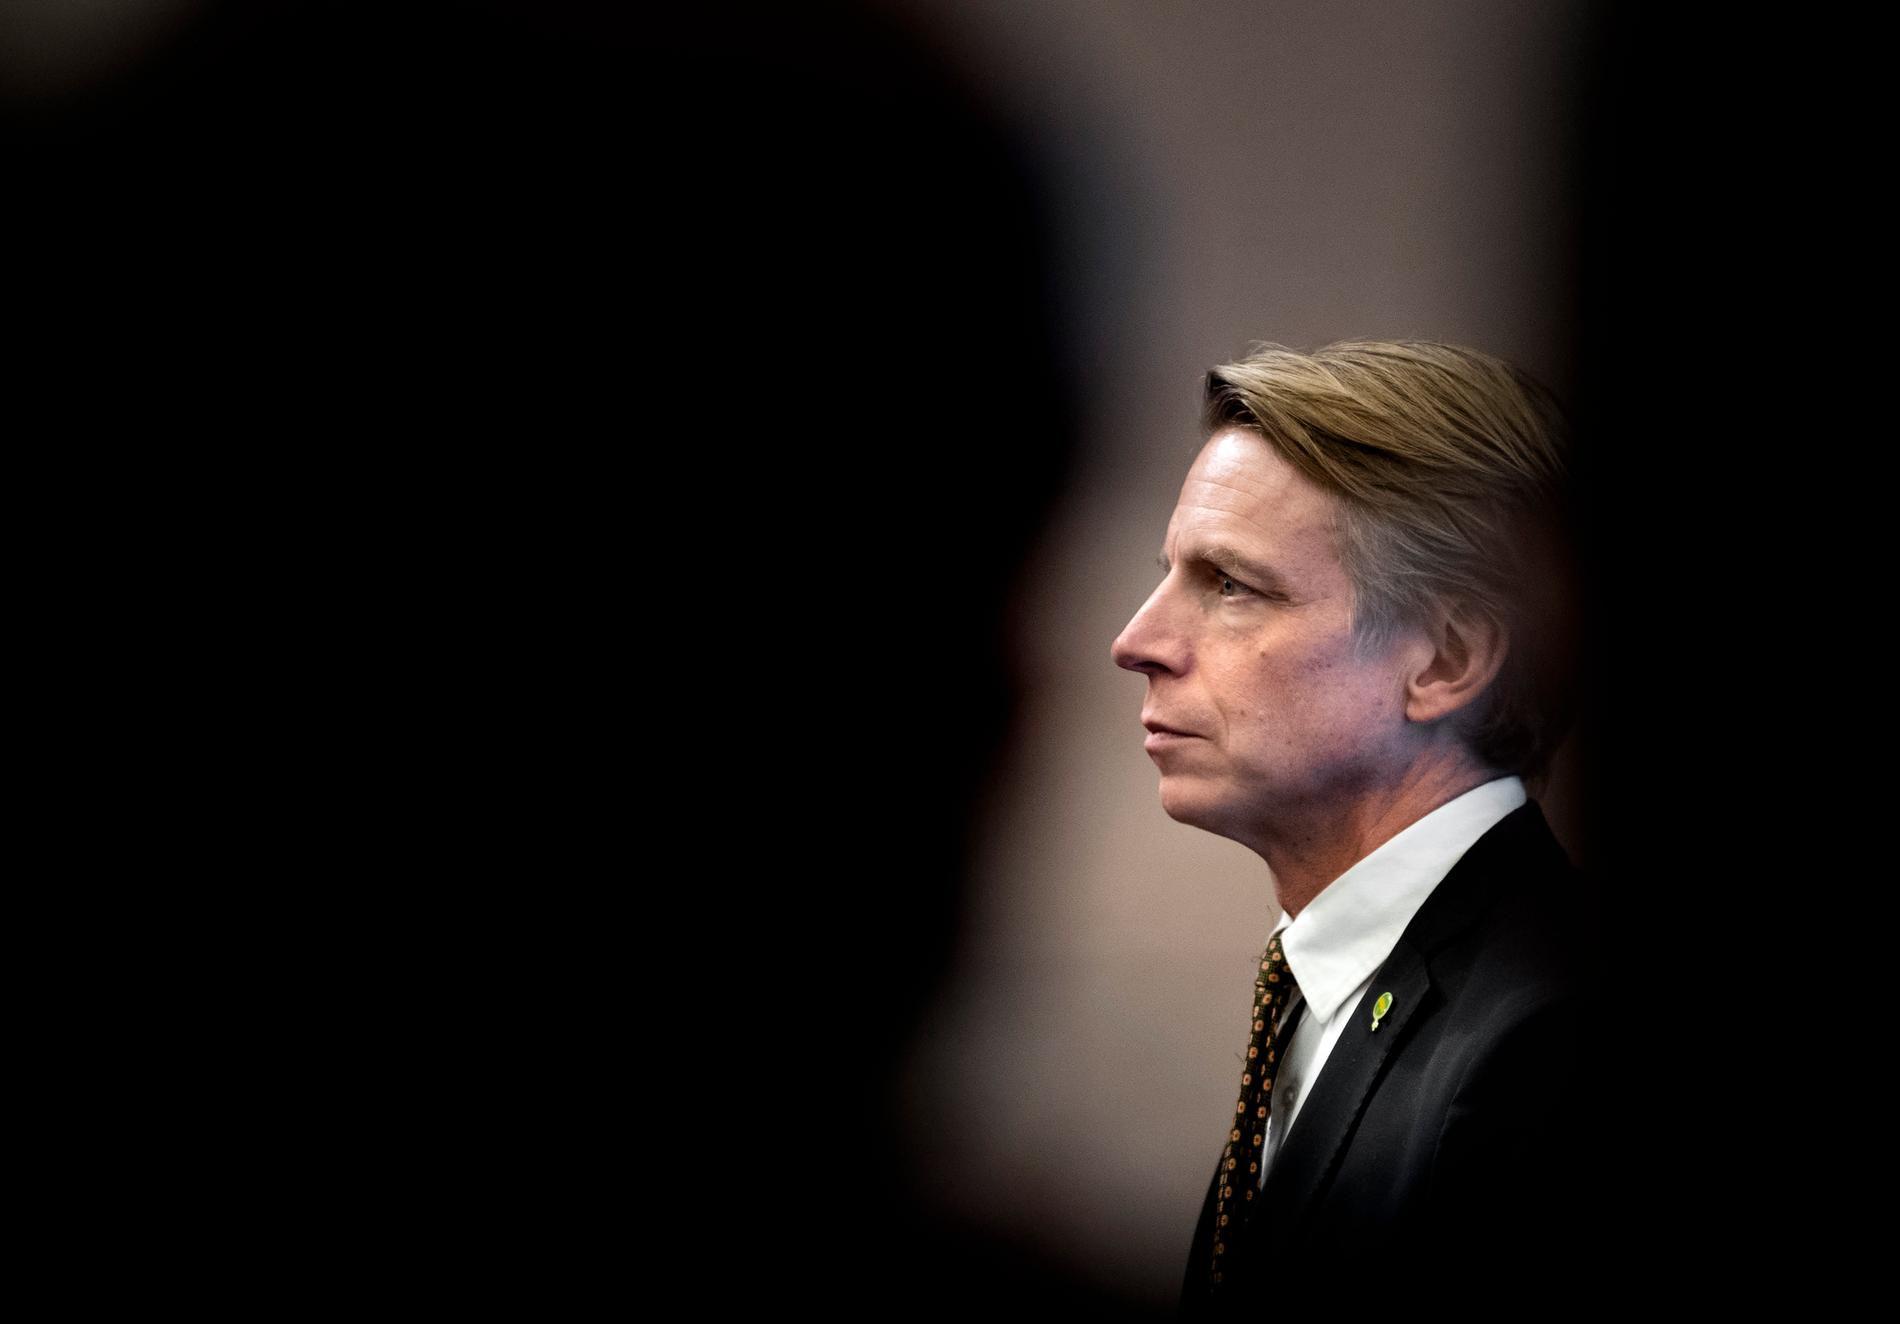 Miljöpartiets språkrör Per Bolund under en pressträff efter budgetomröstningen i riksdagen i förra veckan.